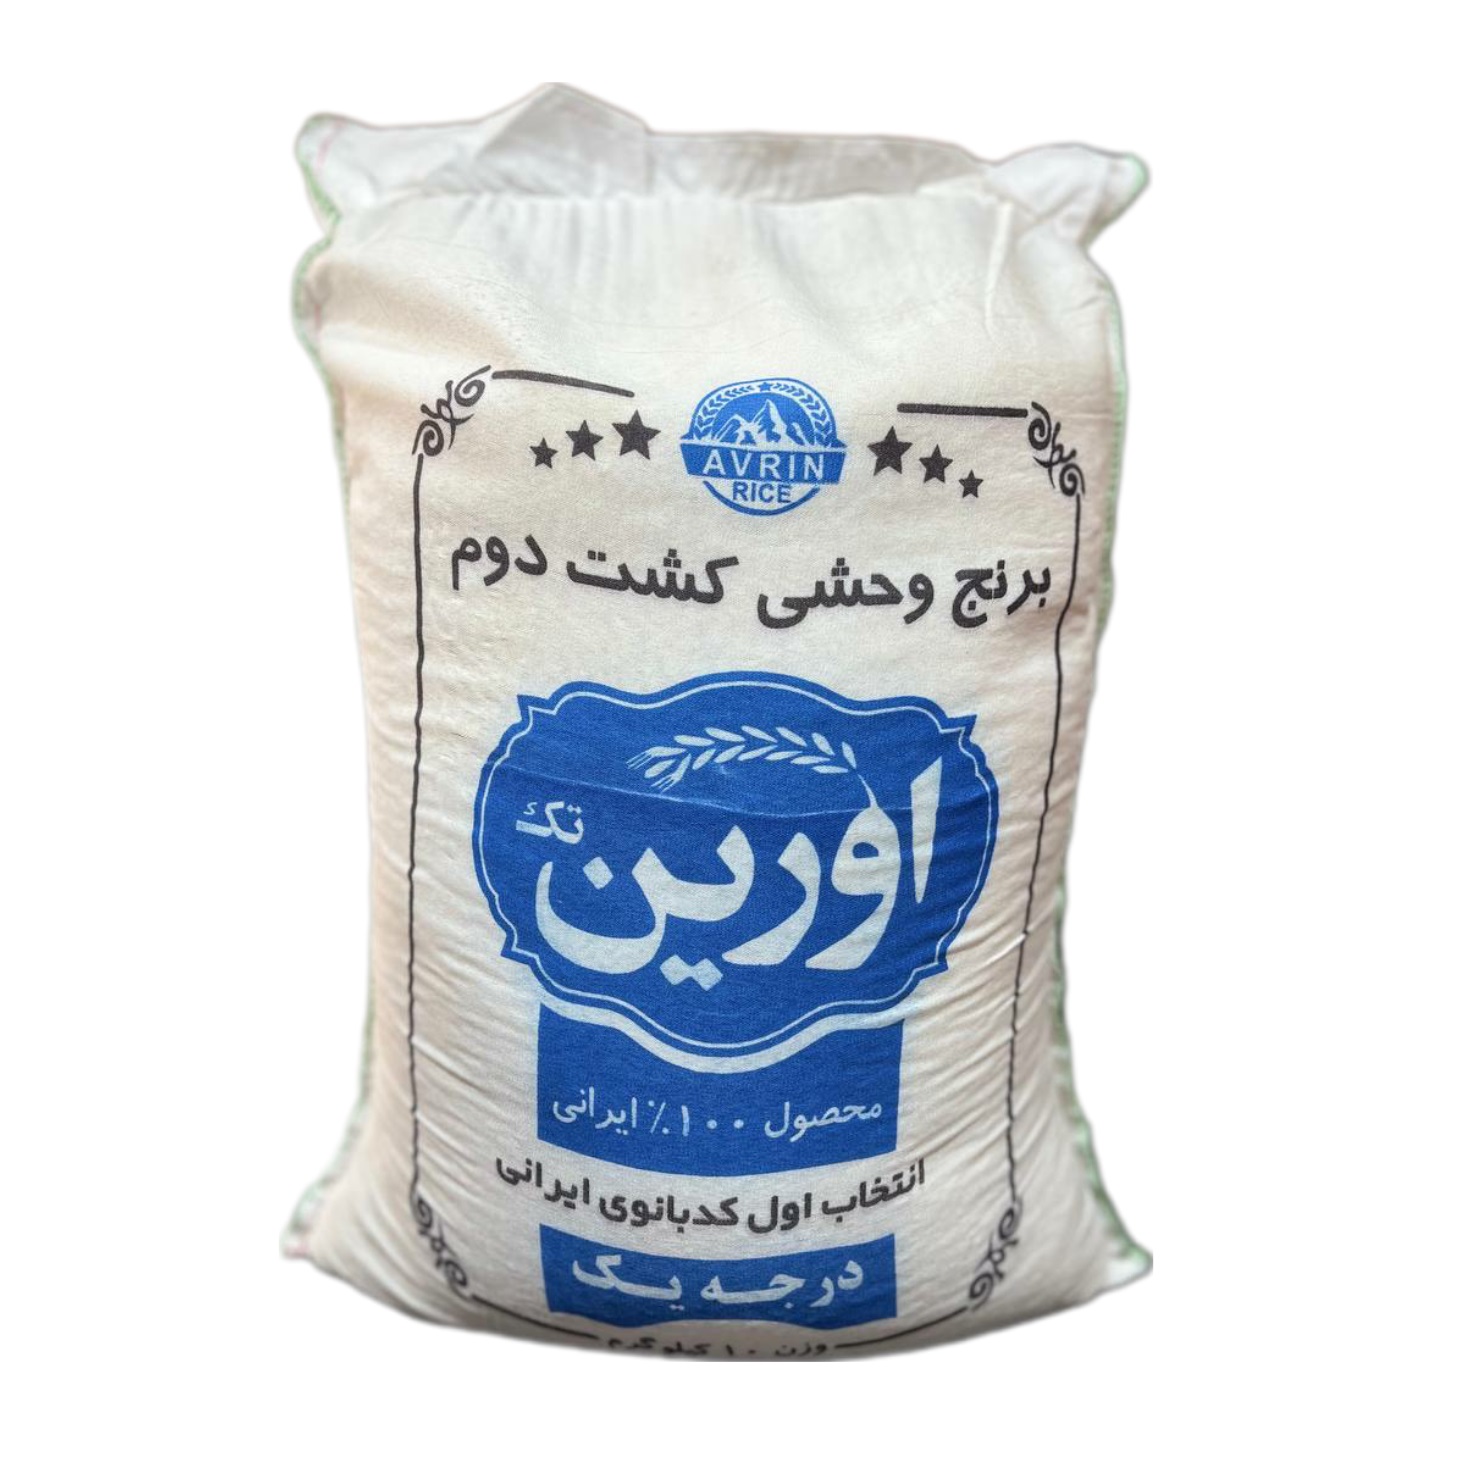 نکته خرید - قیمت روز برنج وحشی کشت دوم اورین تک - 10 کیلوگرم خرید